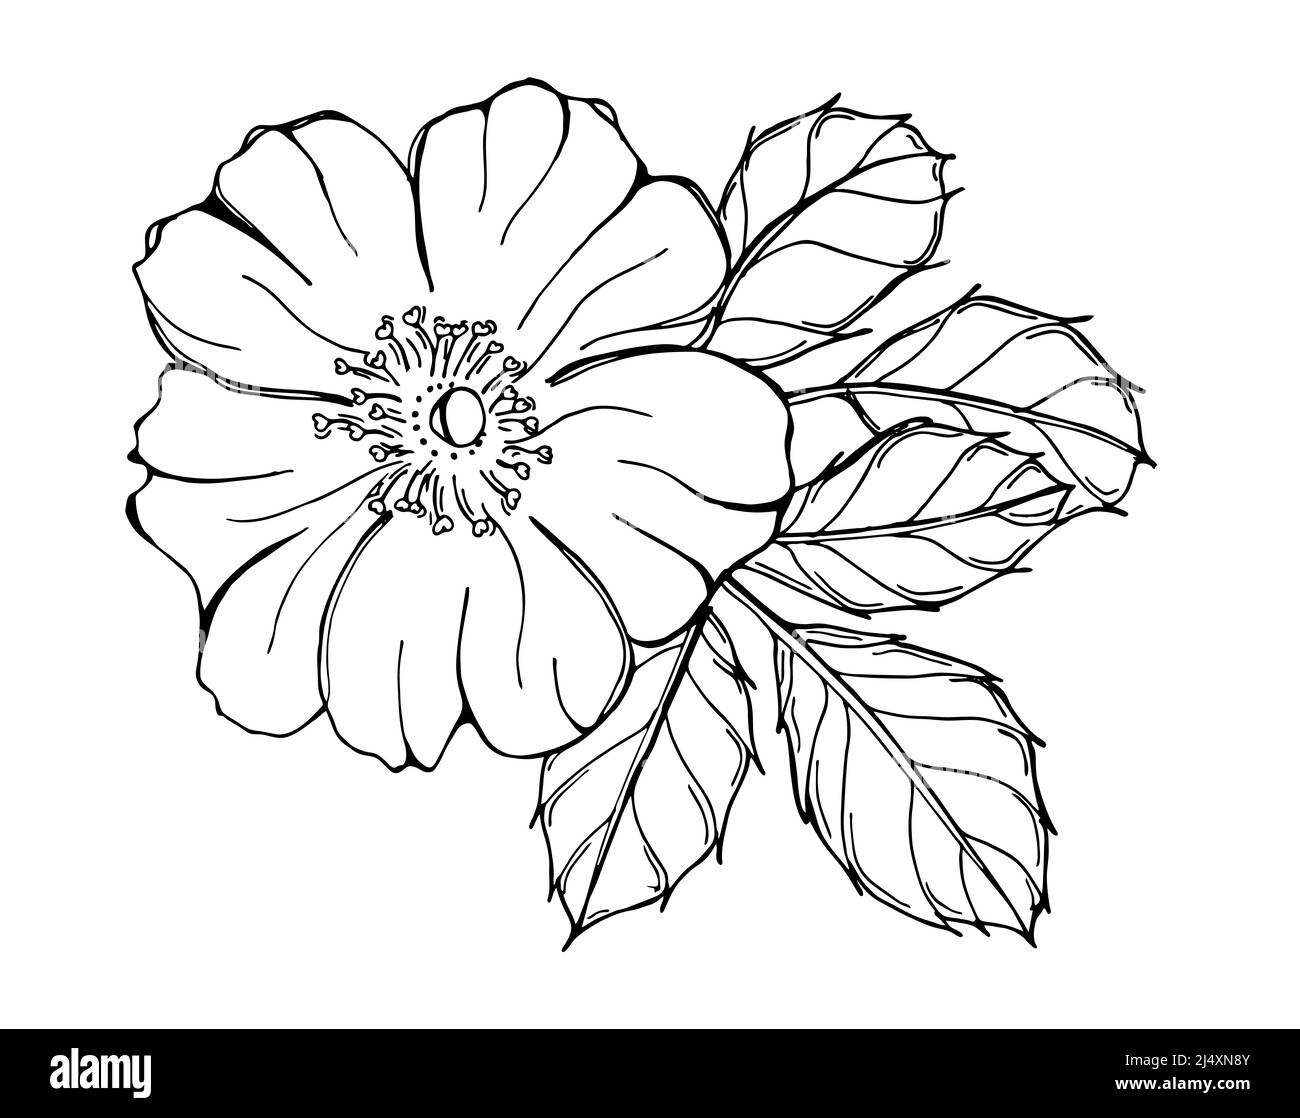 Illustration noire et blanche de rose sauvage isolée sur fond blanc. Image de contour dessinée à la main. Floraison. Banque D'Images